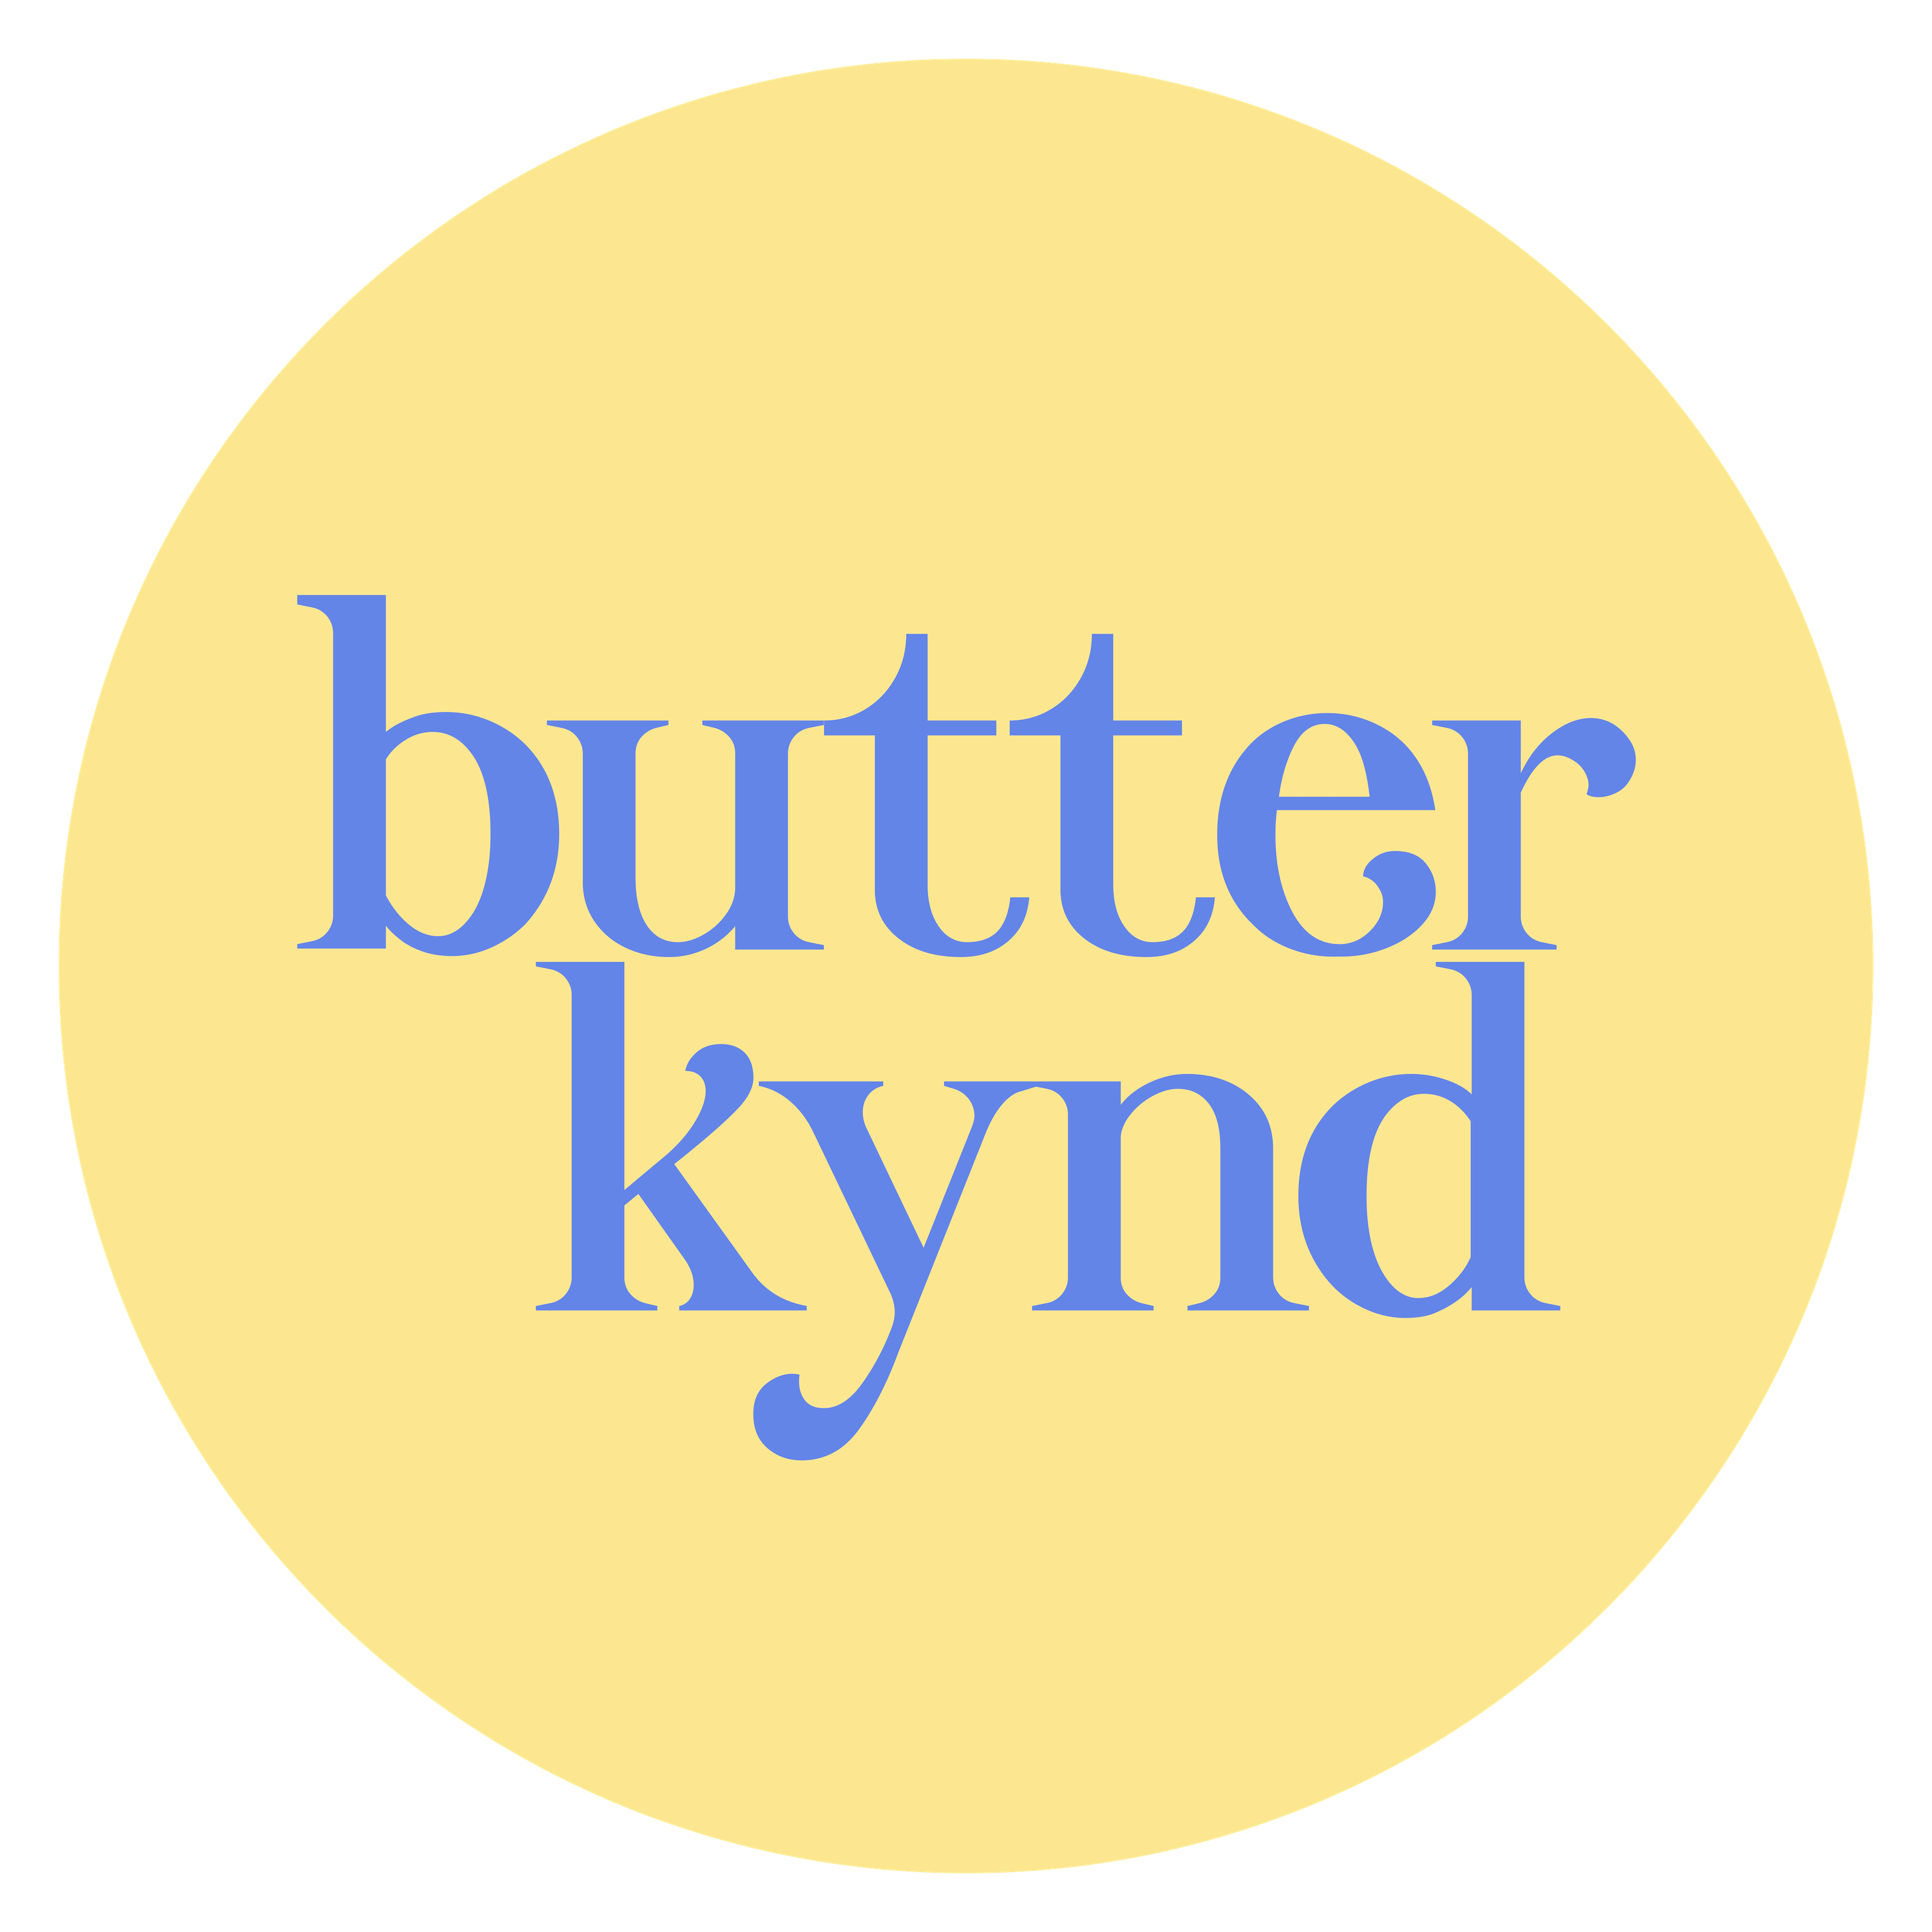 Butterkynd